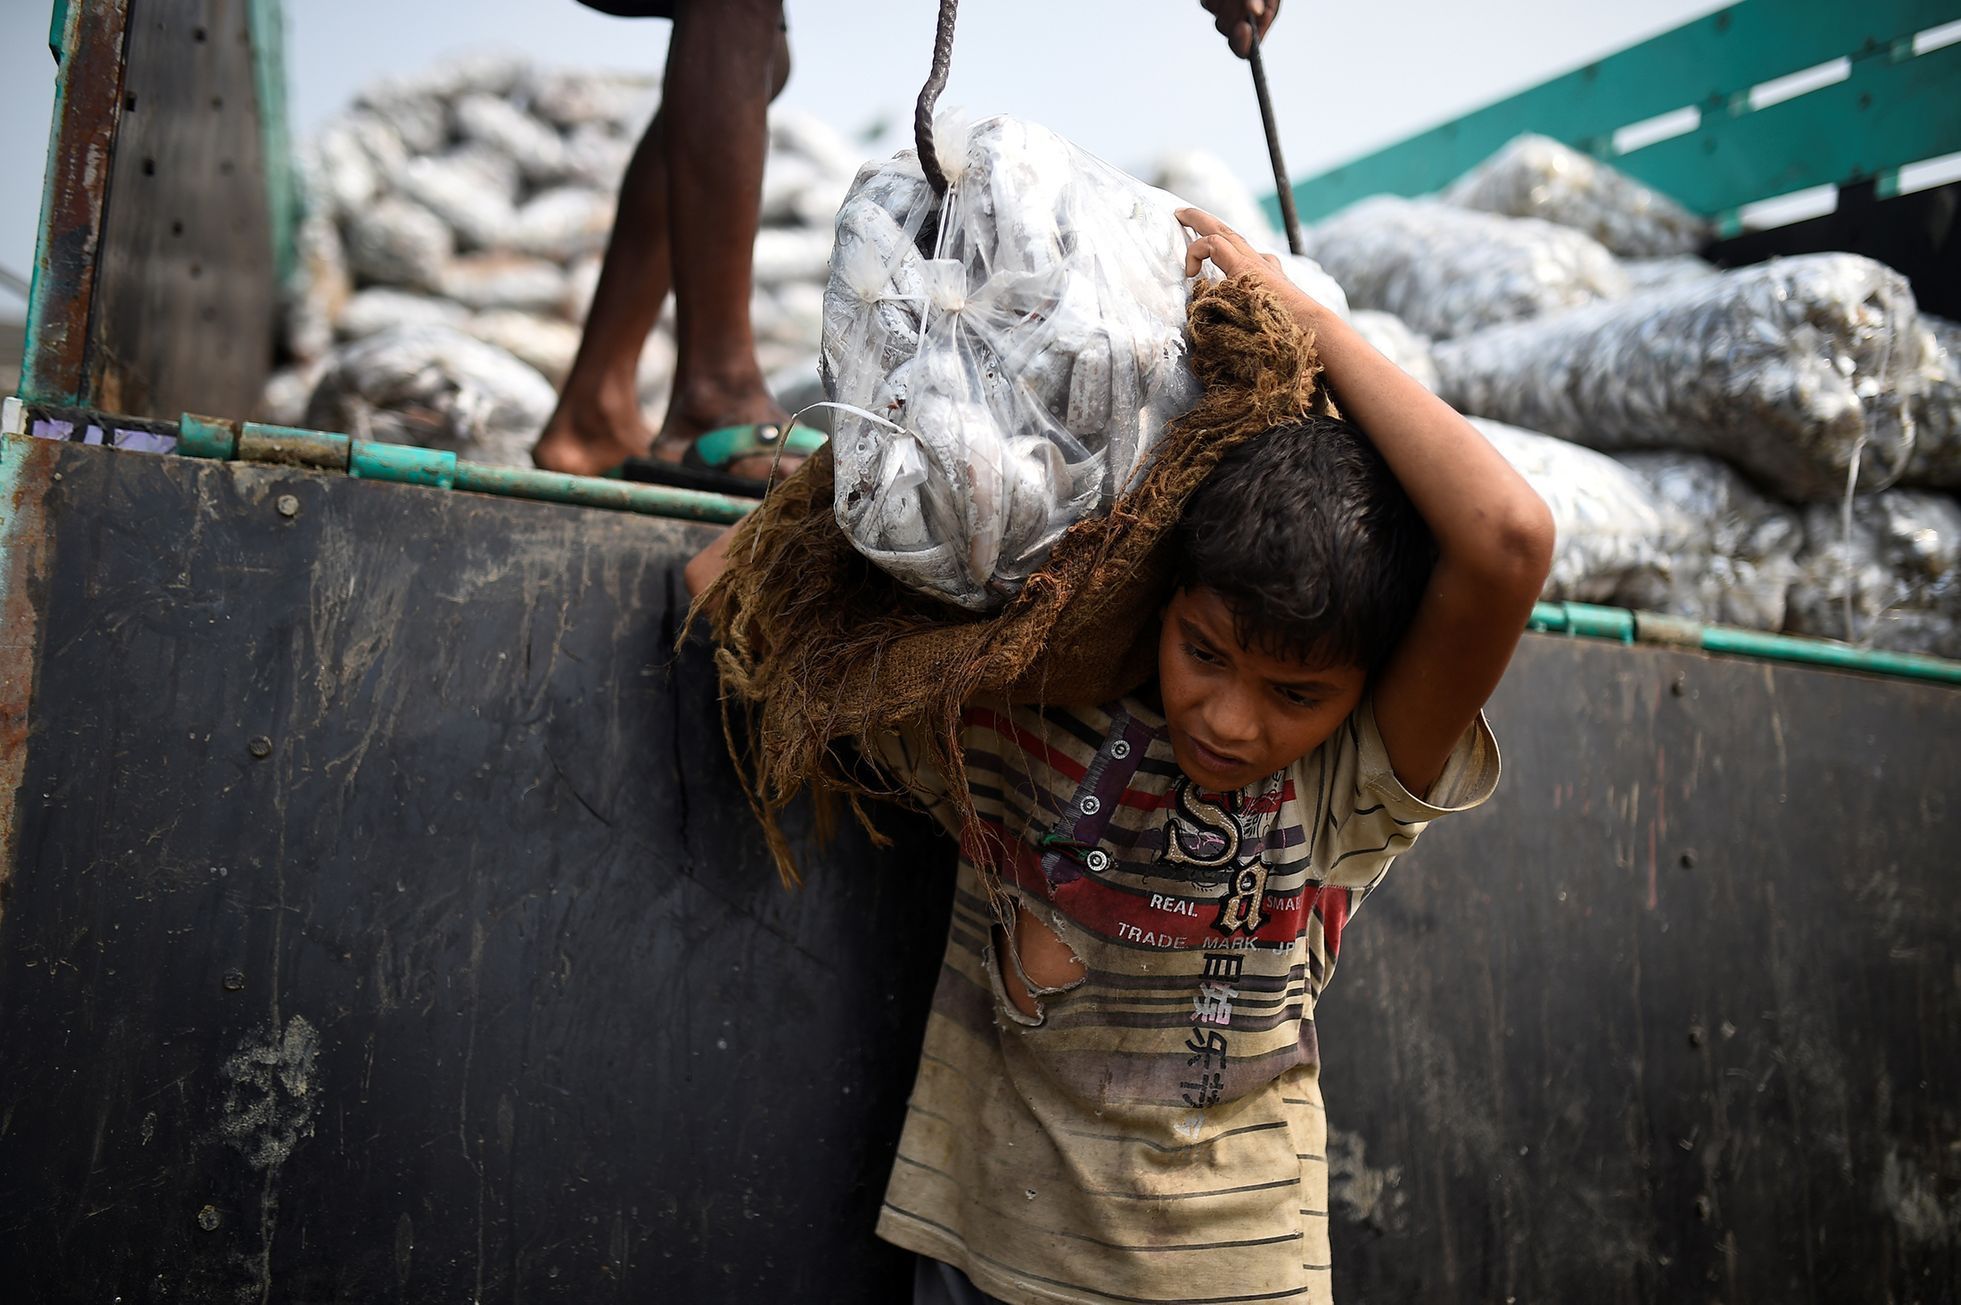 Fotogalerie / Rohingové v Bangladéši / Reuters / 17